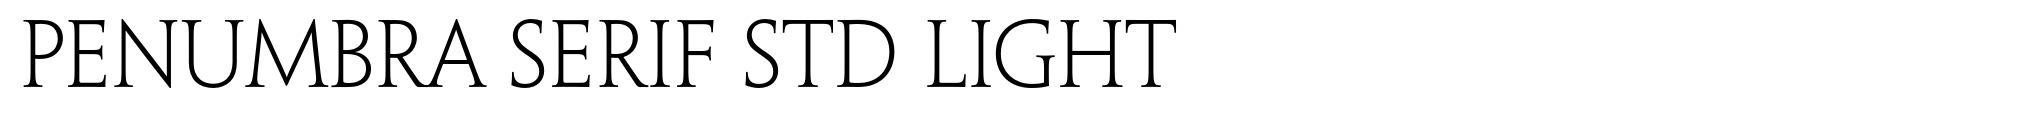 Penumbra Serif Std Light image